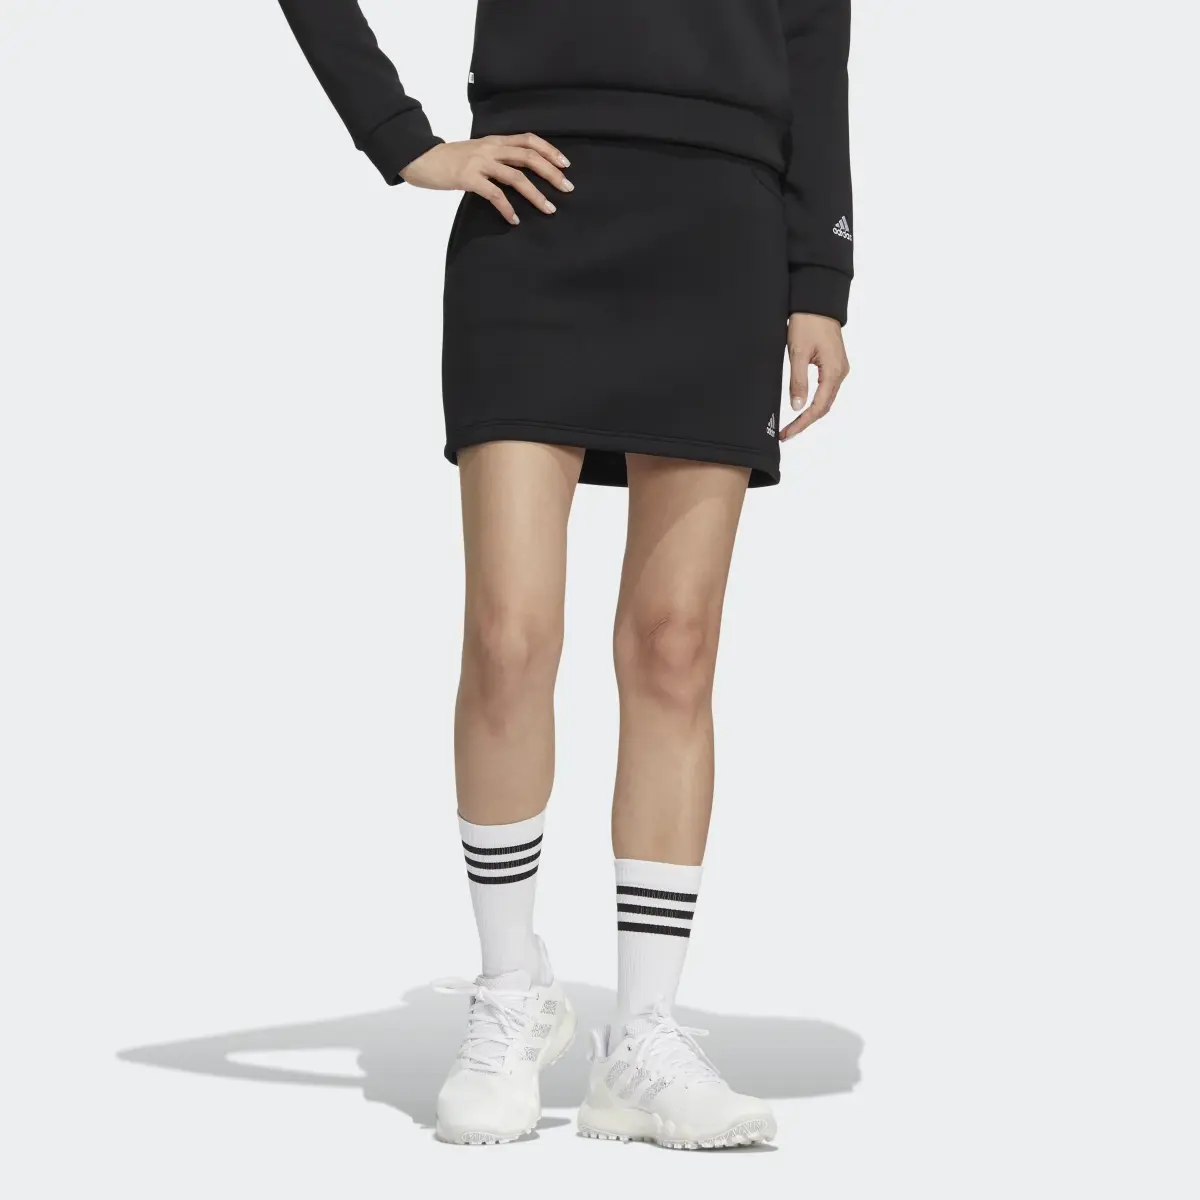 Adidas 3-Bar Skirt. 1